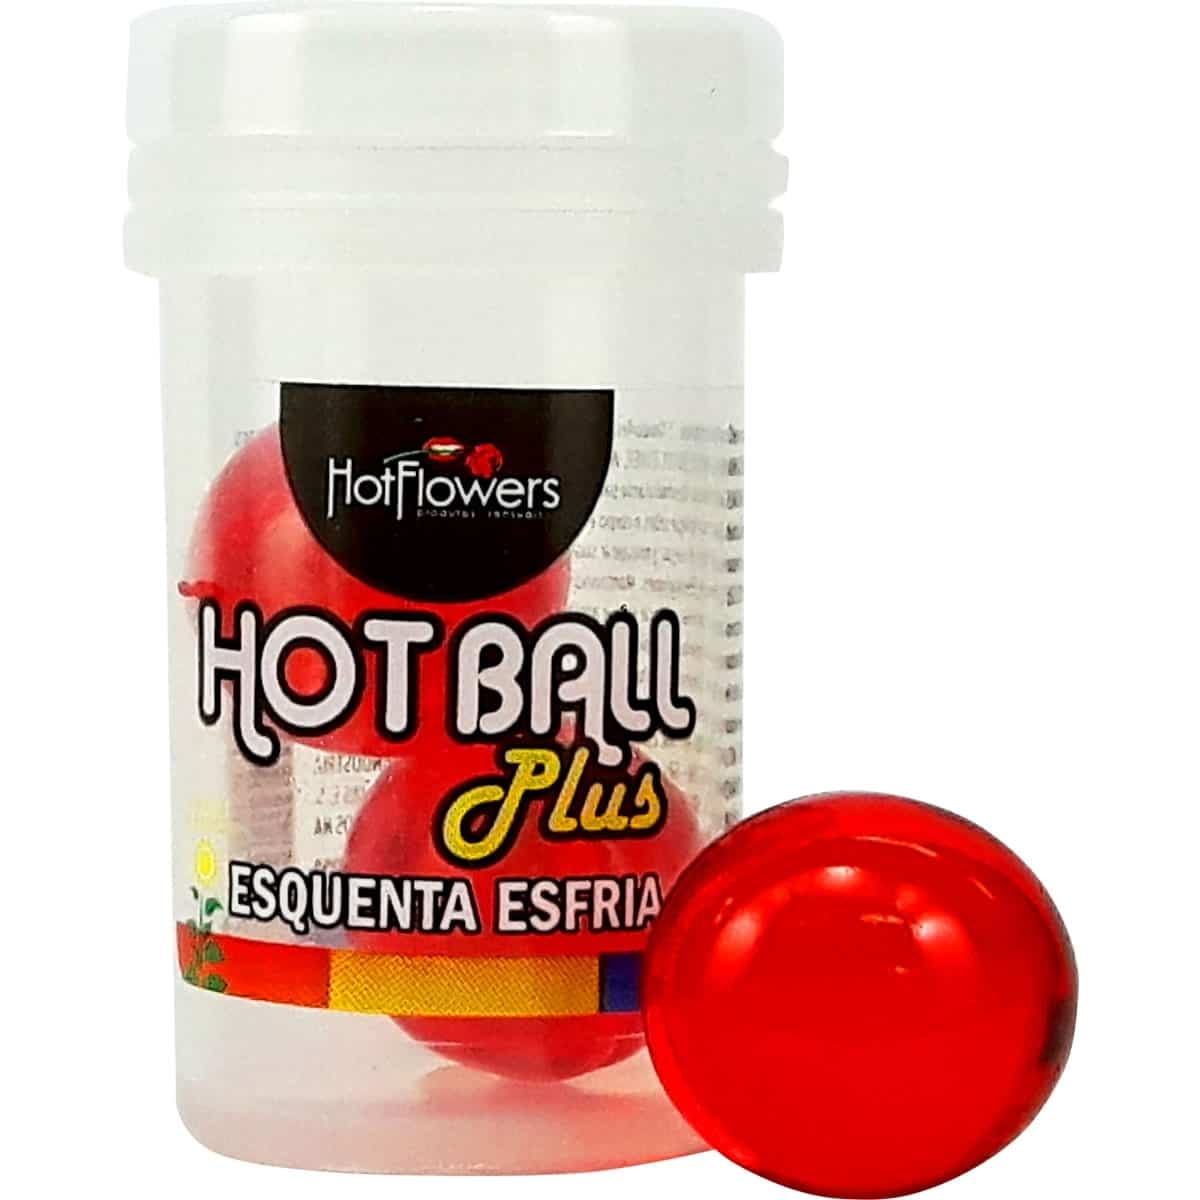 Hot Ball Plus Esquenta Esfria